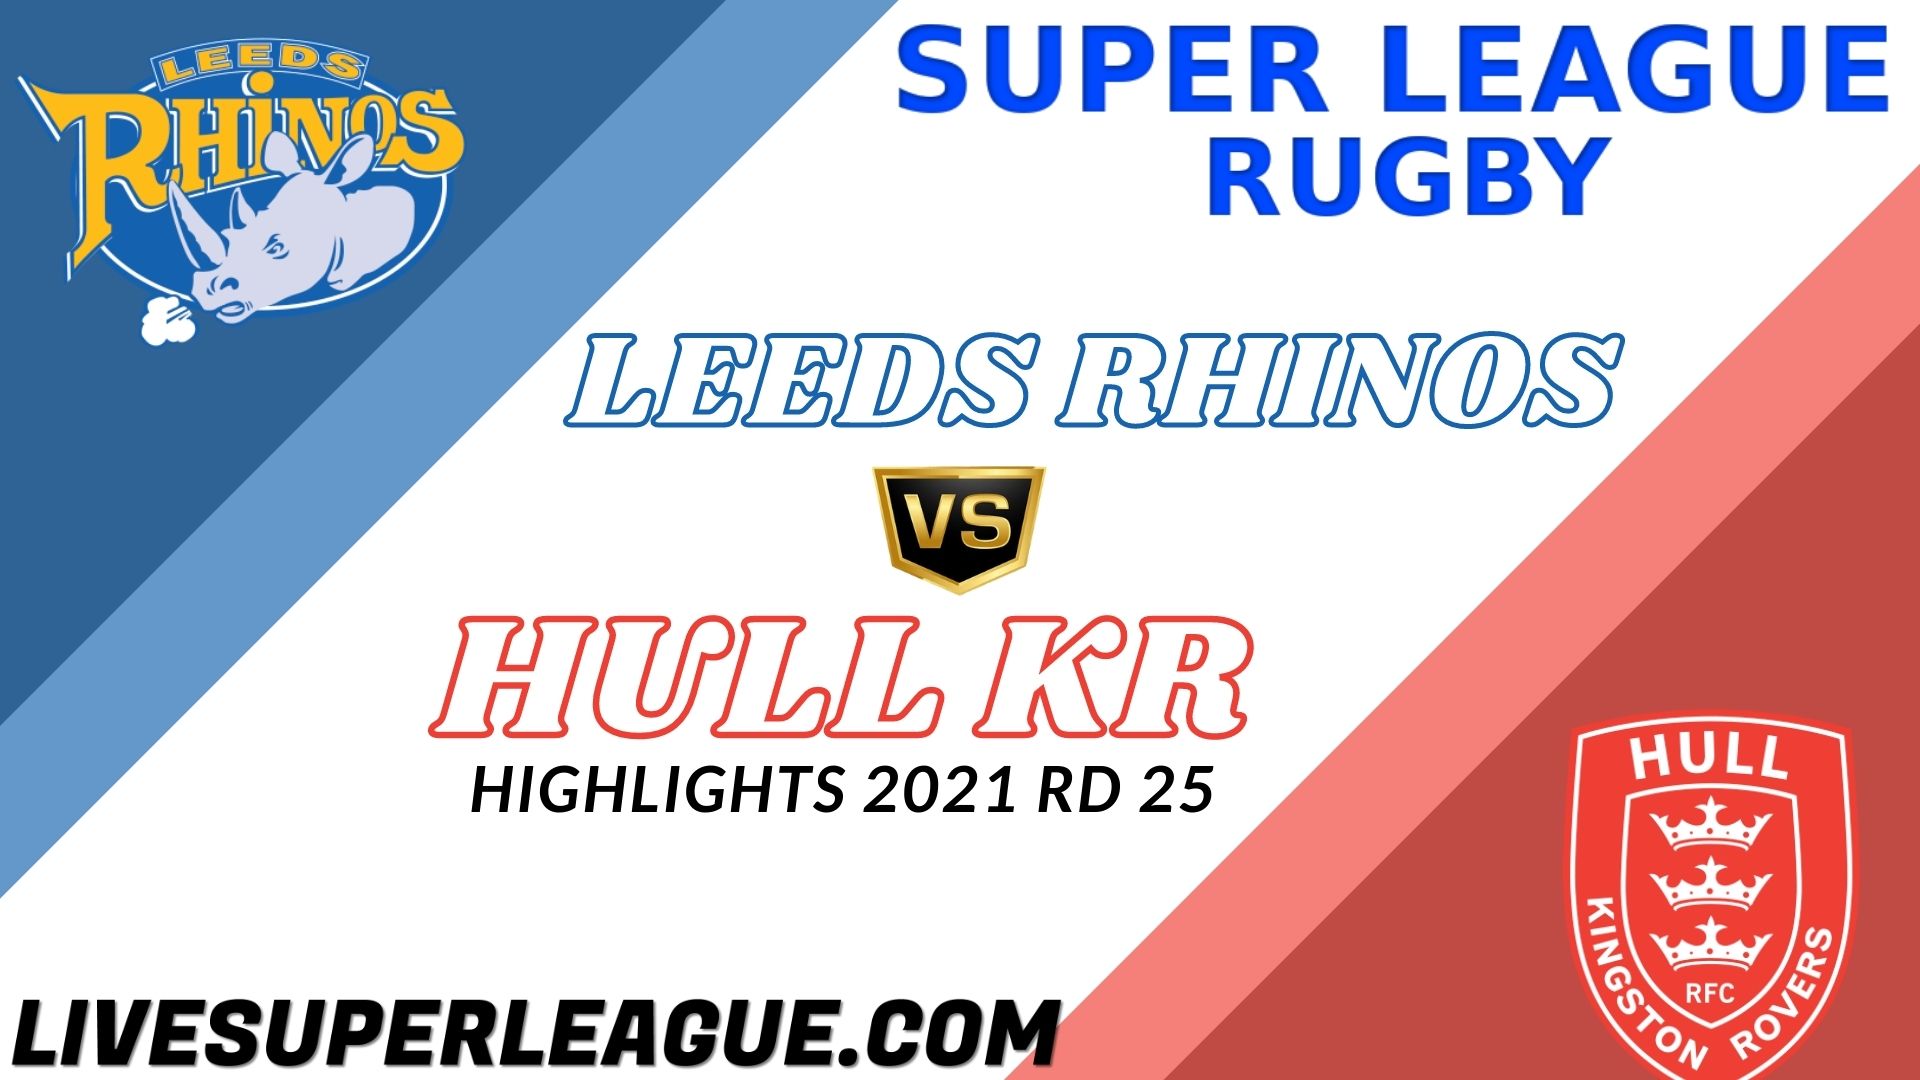 Leeds Rhinos Vs Hull KR Highlights 2021